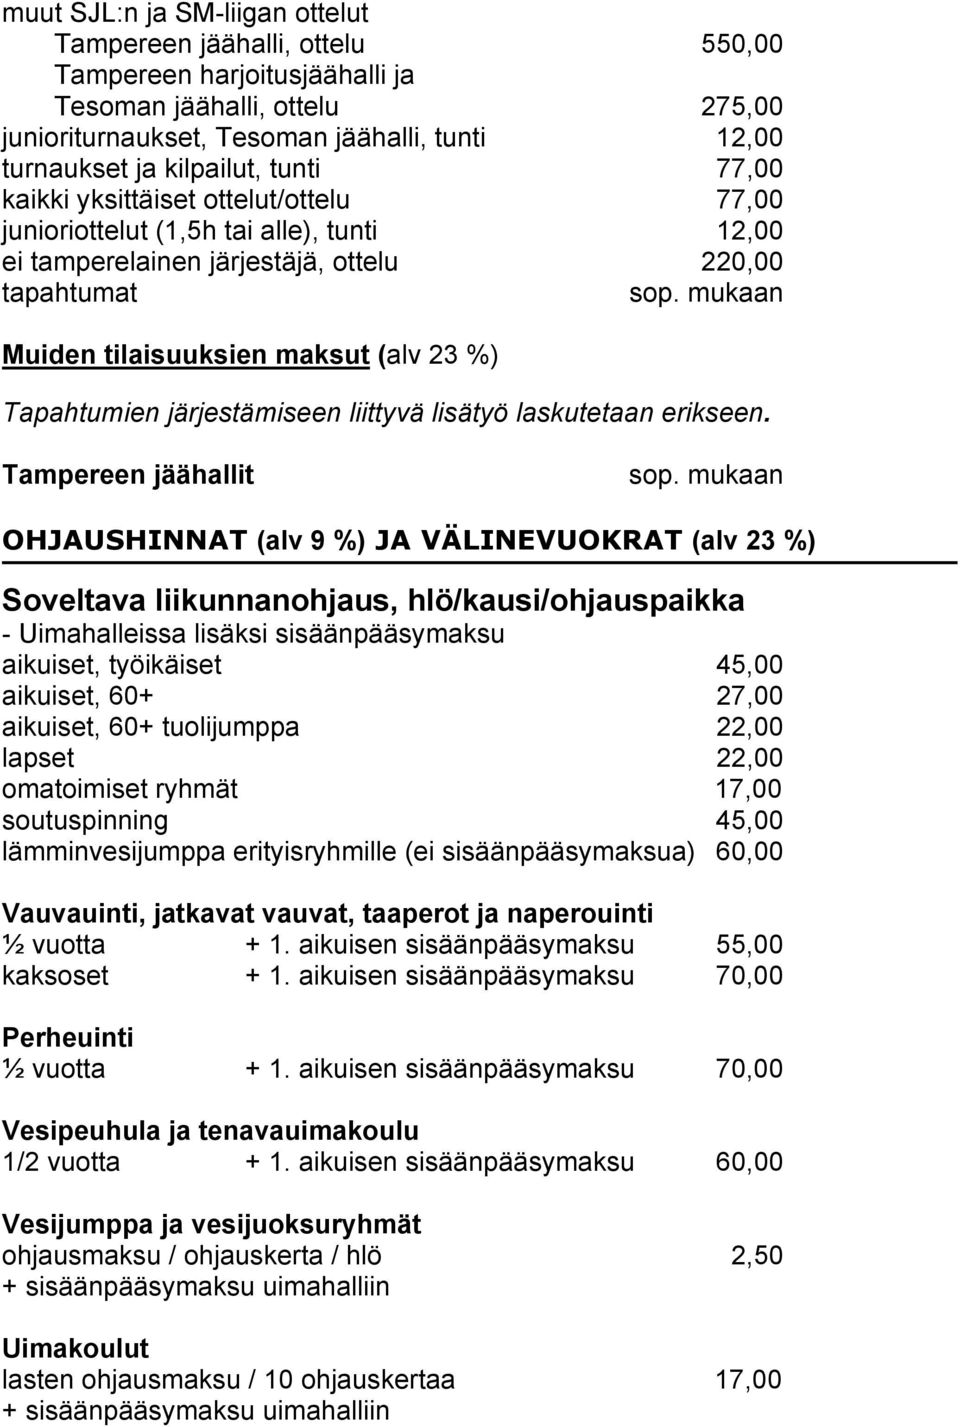 Tampereen jäähallit OHJAUSHINNAT (alv 9 %) JA VÄLINEVUOKRAT (alv 23 %) Soveltava liikunnanohjaus, hlö/kausi/ohjauspaikka - Uimahalleissa lisäksi sisäänpääsymaksu aikuiset, työikäiset 45,00 aikuiset,